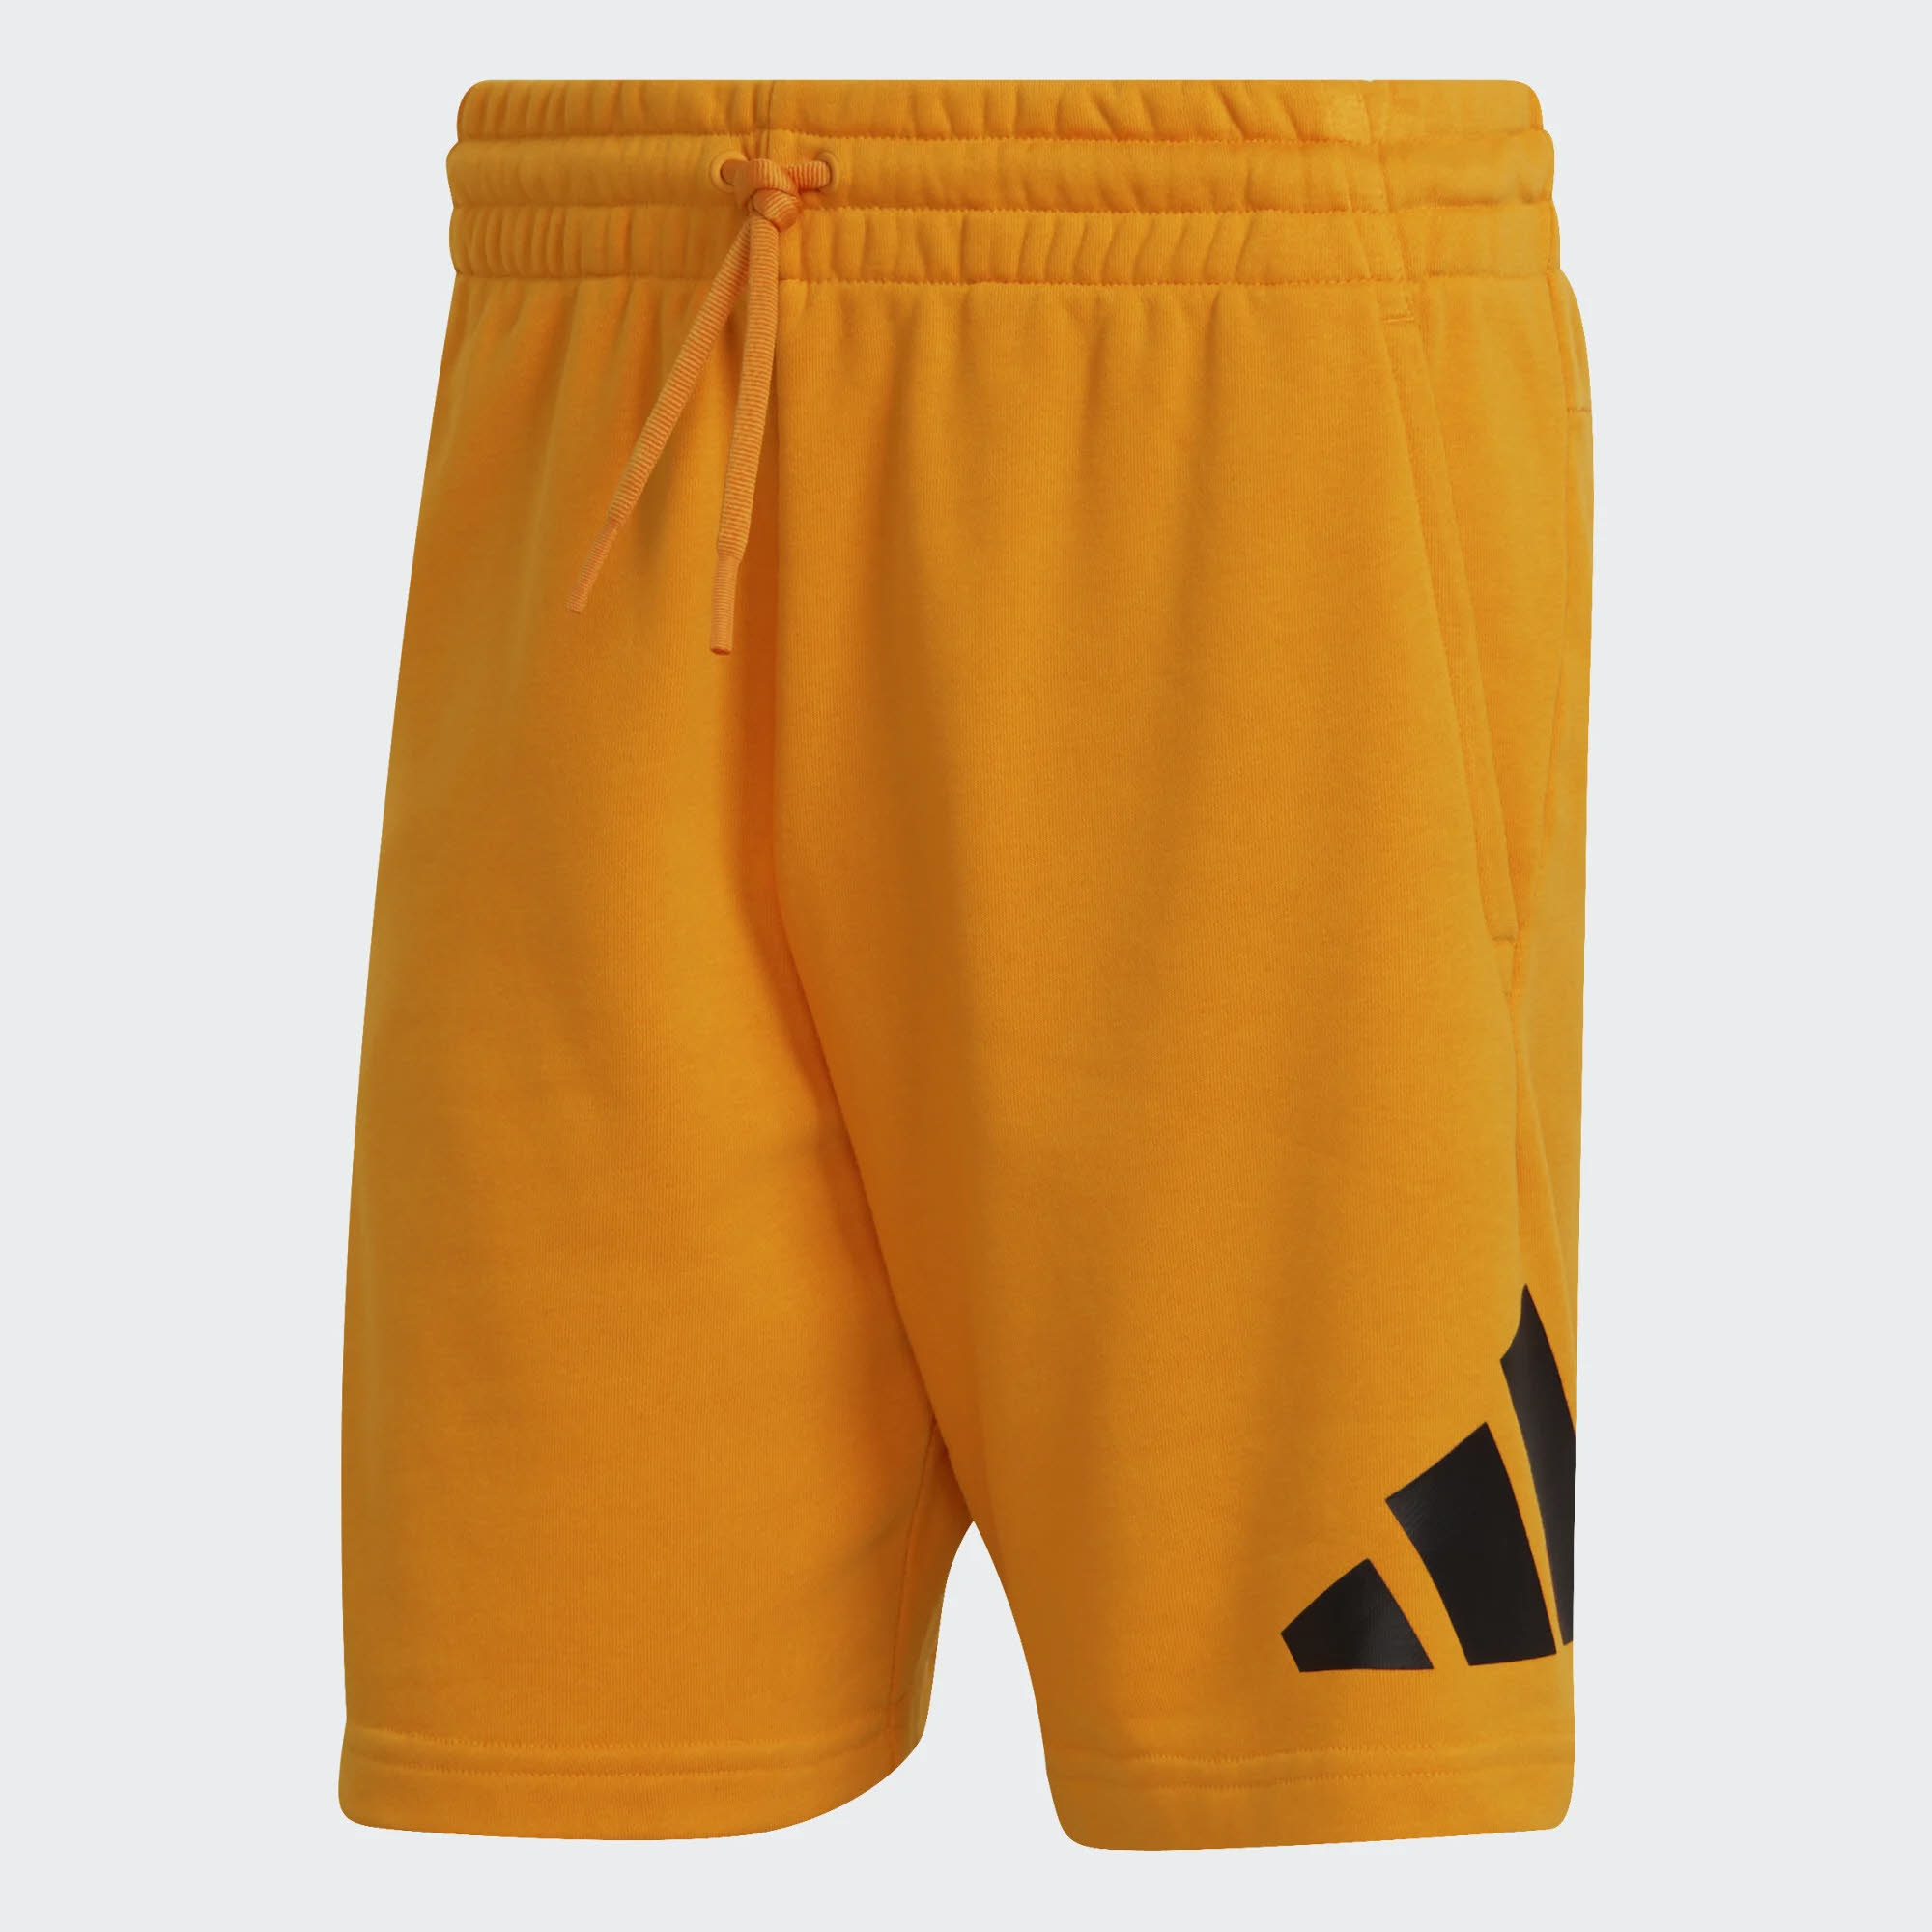 adidas M FI 3BAR Herren Future Icons Shorts Freizeit Training orange NEU